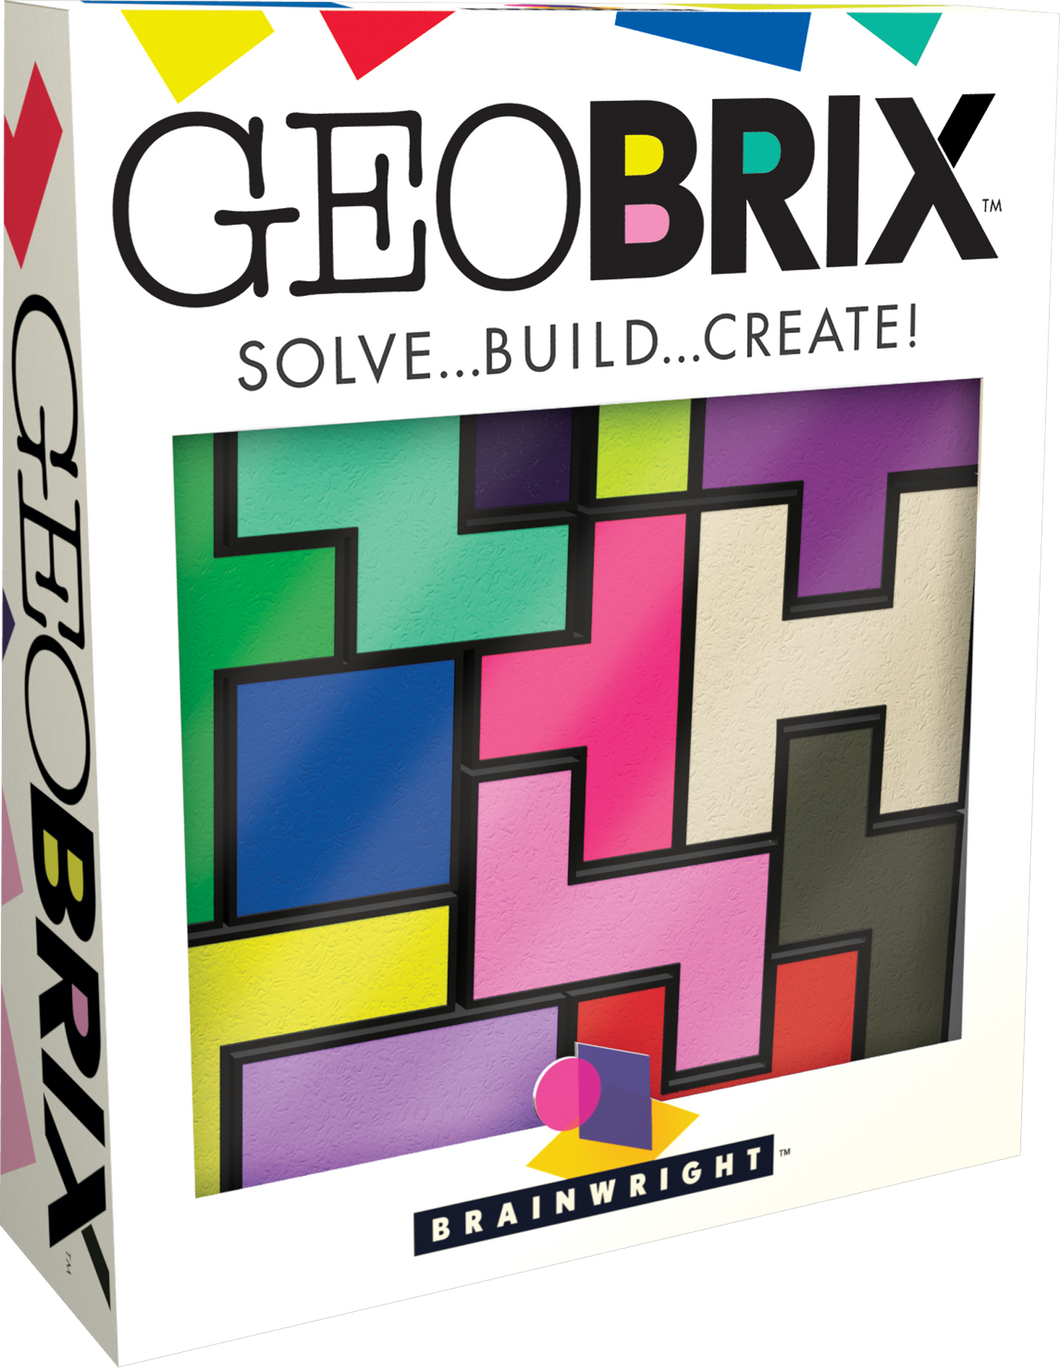 GEOBRIX- SOLVE...BUILD...CREATE!